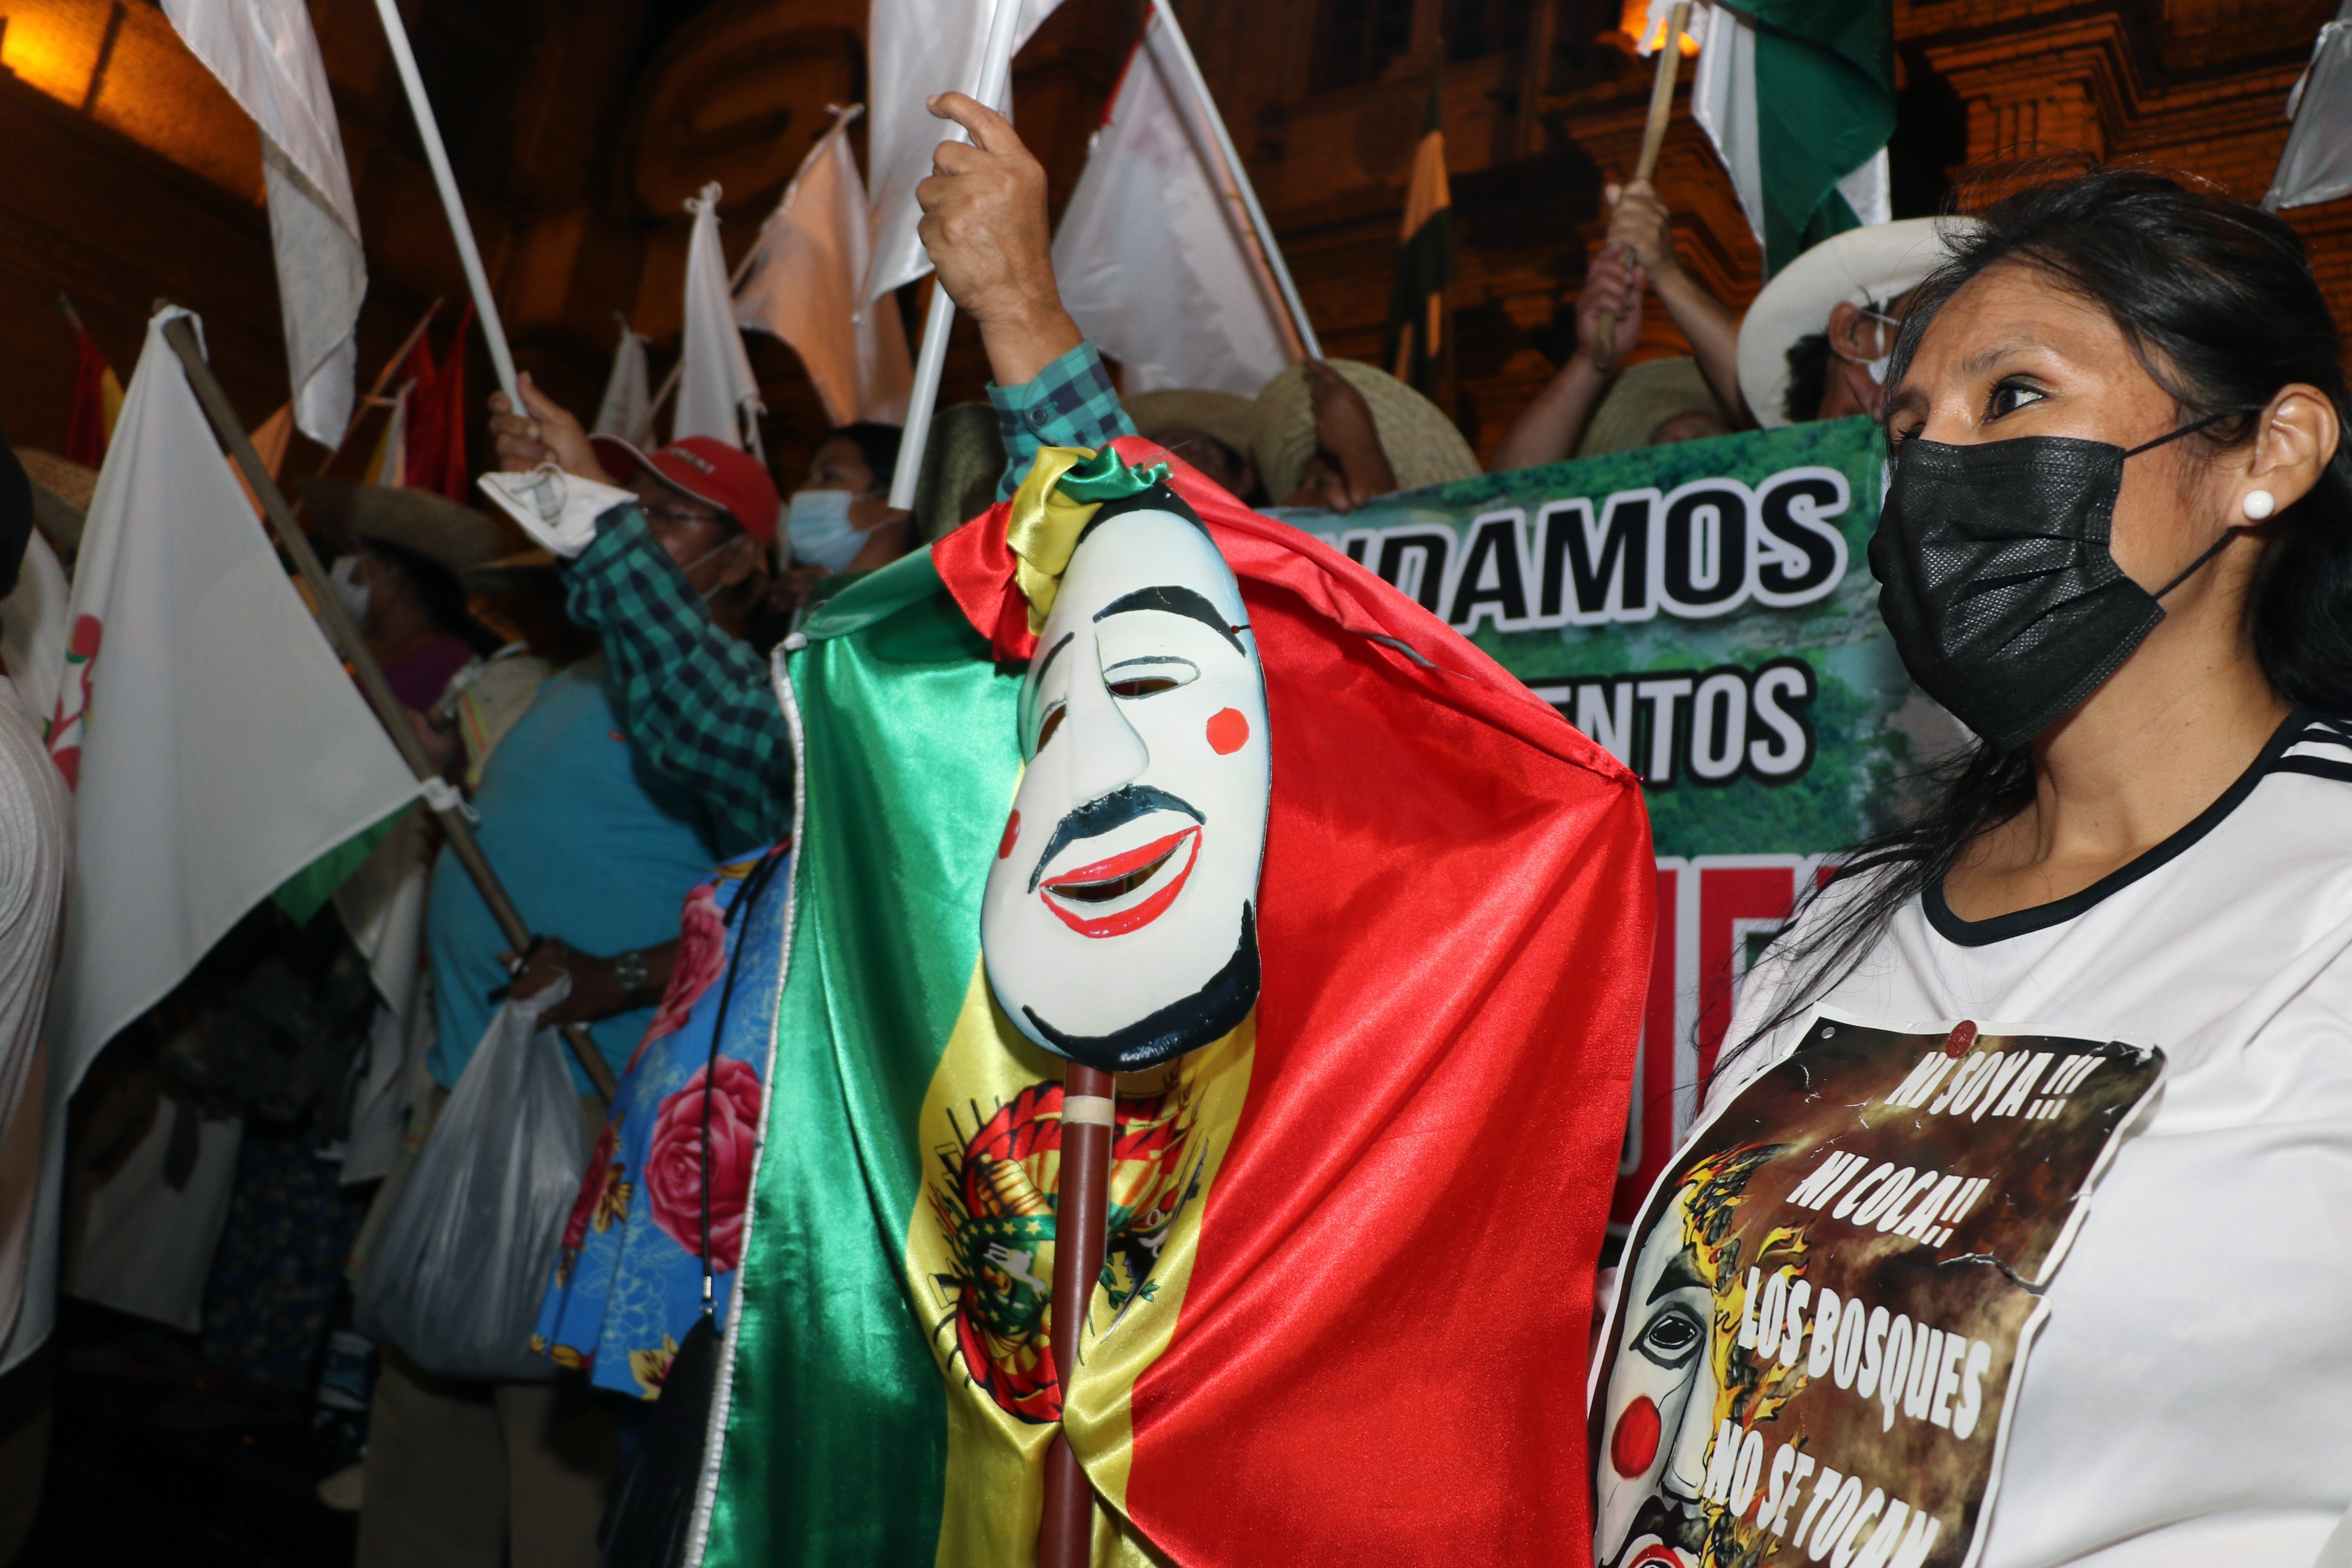 La propuesta contra los violadores se da luego de varias semanas de manifestaciones, protestas, caminatas e incidentes en Bolivia relacionados a diversas exigencias sobre el aborto, la libertad de mercado y respeto de los pueblos originarios. (Foto Prensa Libre: EFE)